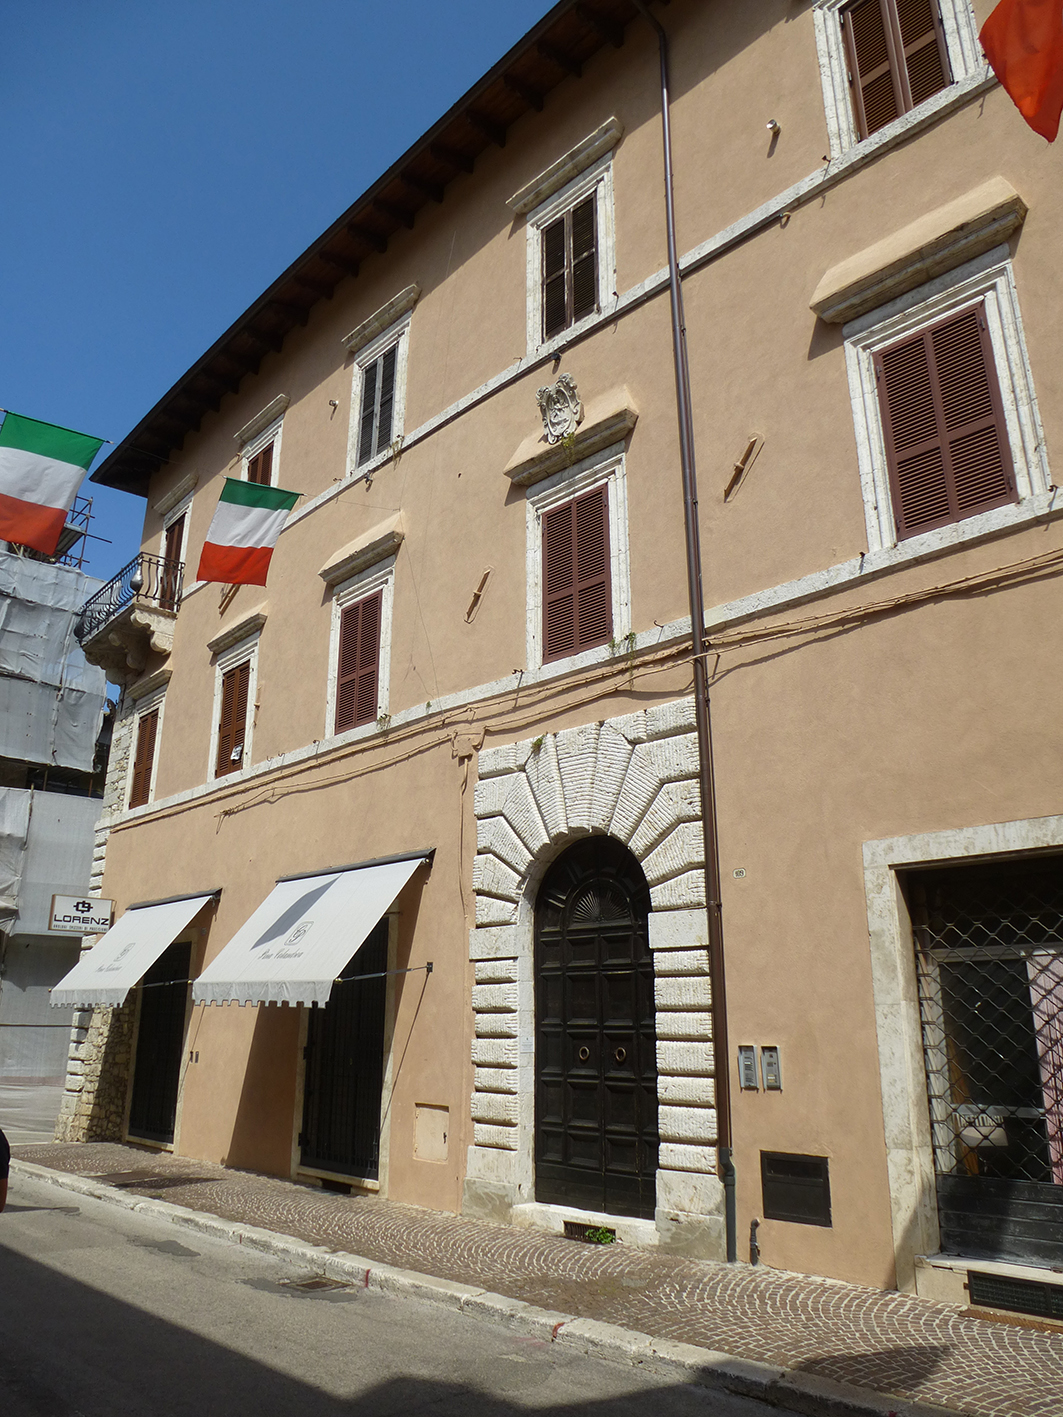 Palazzo Garucci Marelli (palazzo) - Leonessa (RI)  (XX)